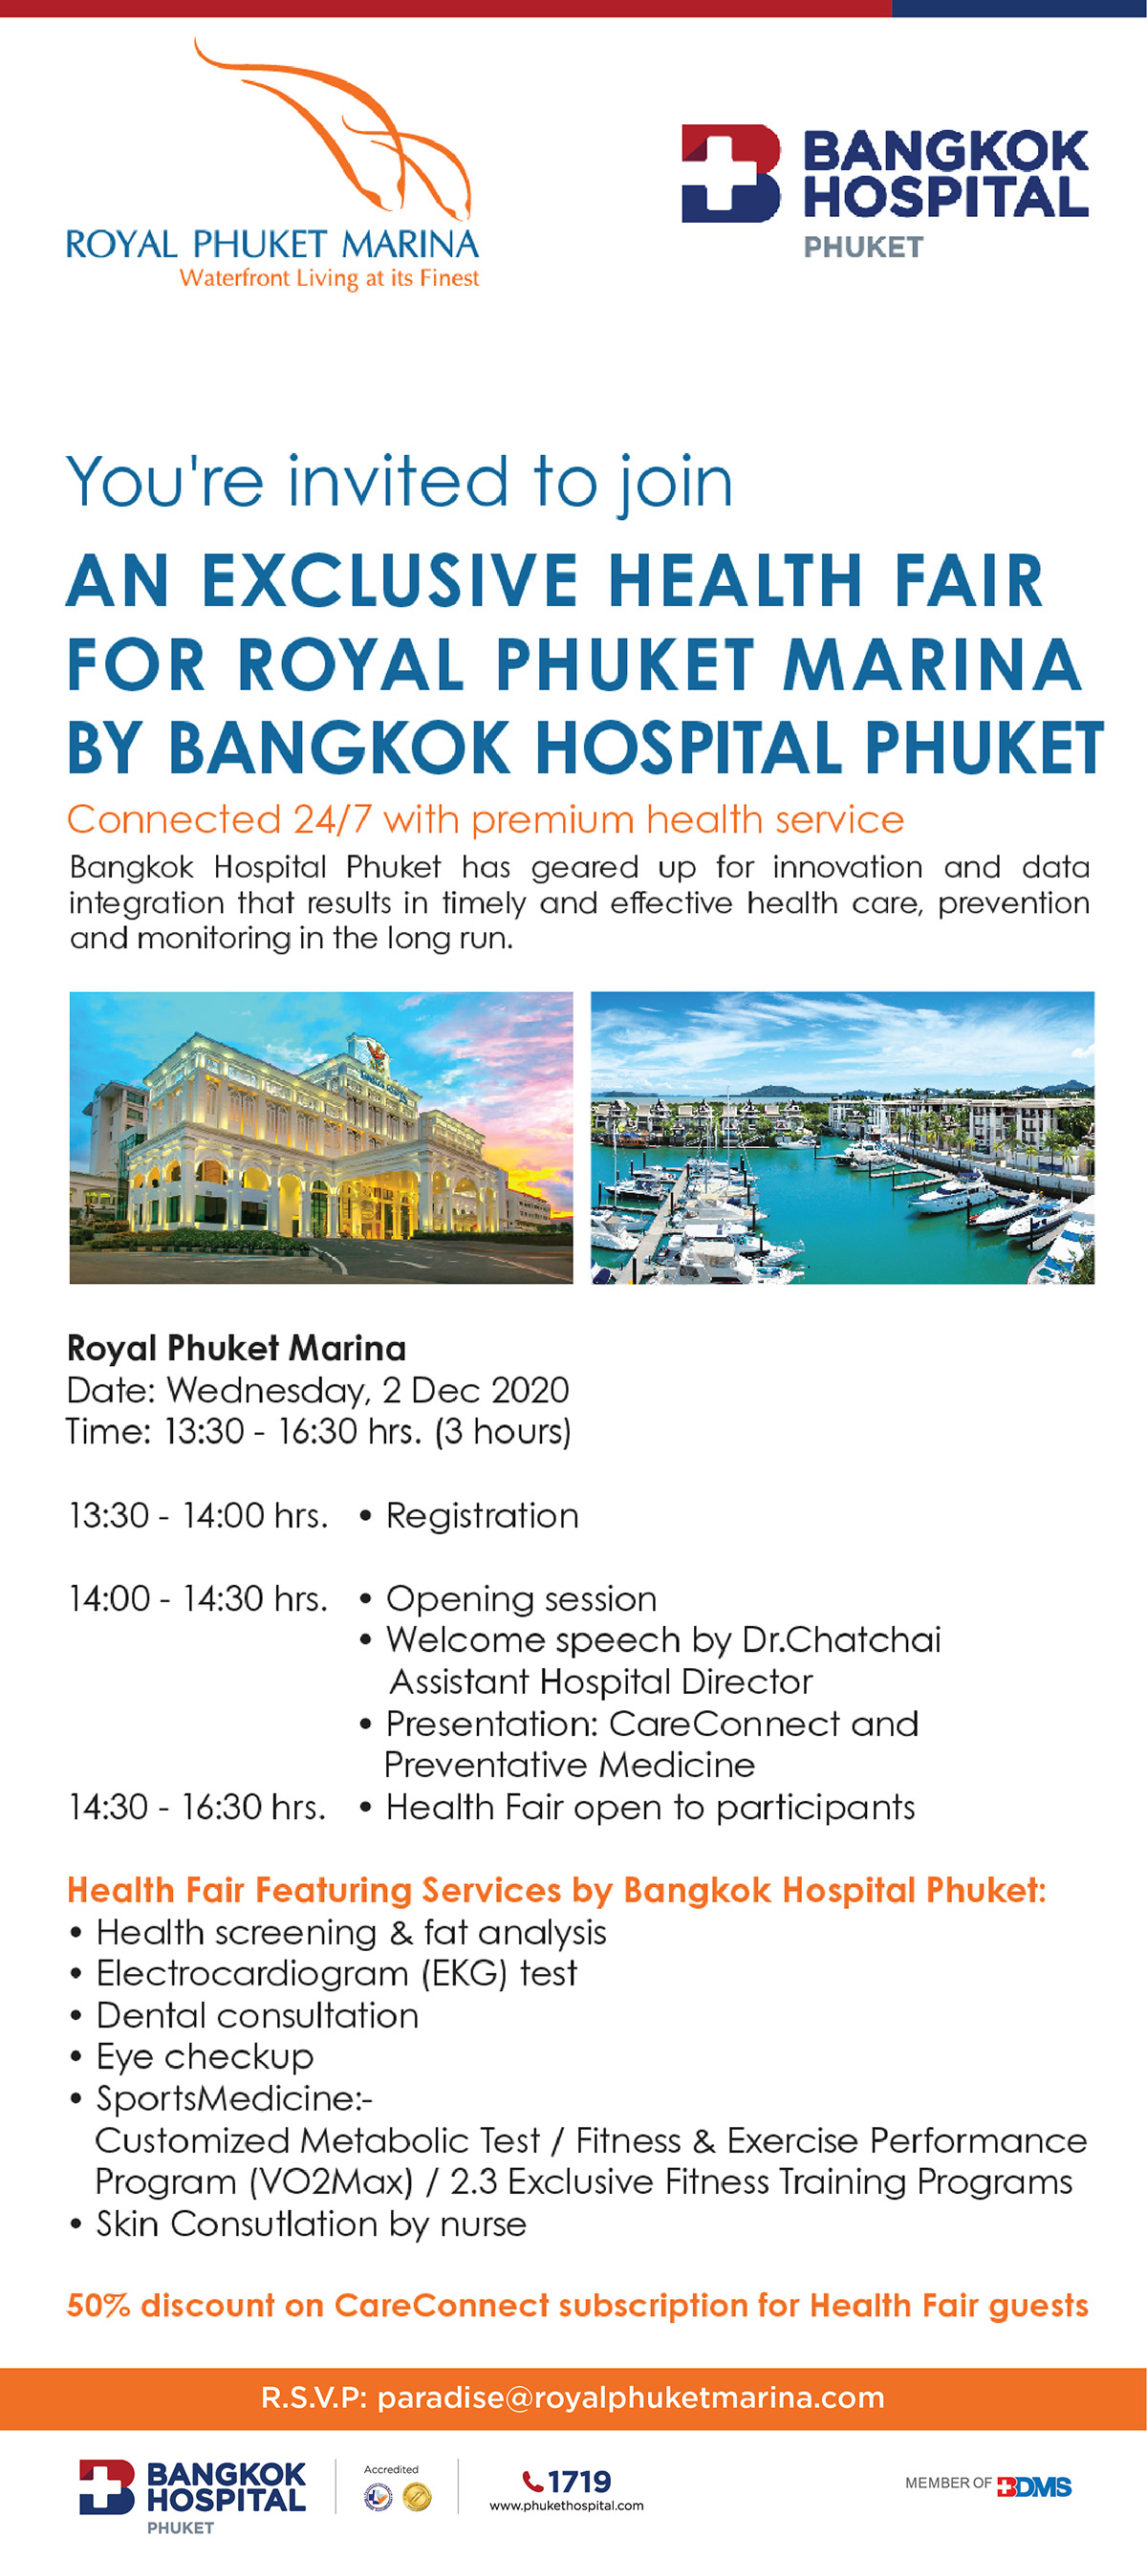 An Exclusive Health Fair for Royal Phuket Marina by Bangkok Hospital Phuket